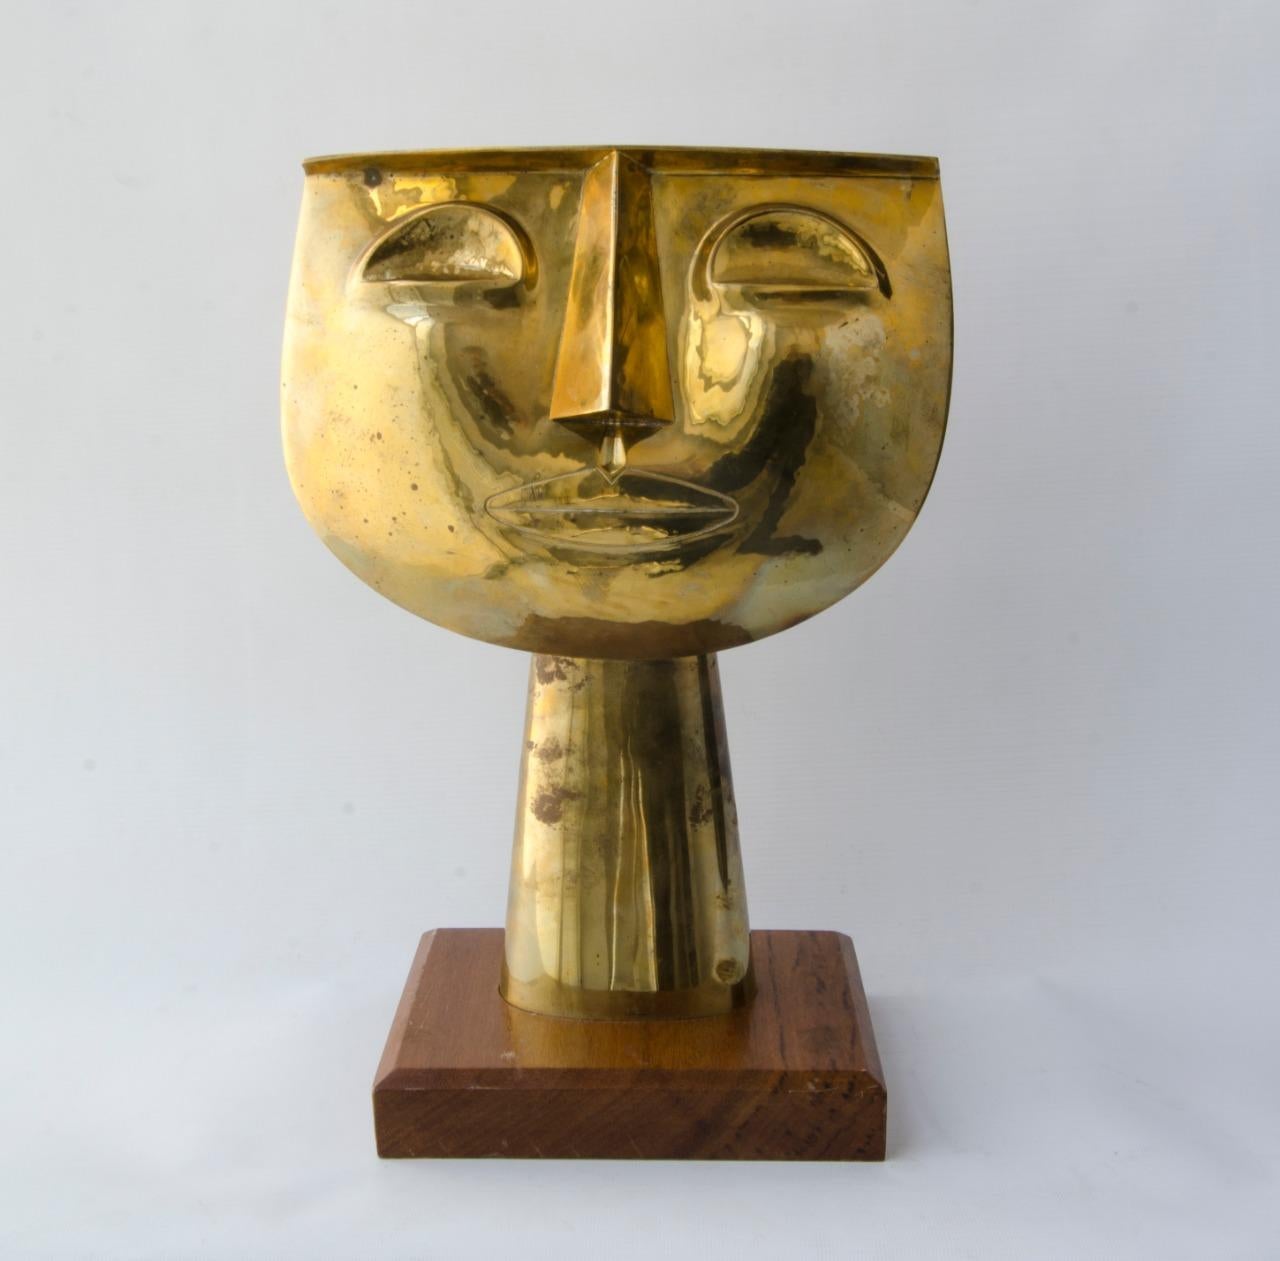 Centraméricain Guayasamin 'tete bronce' Artiste : Oswaldo Guayasamin